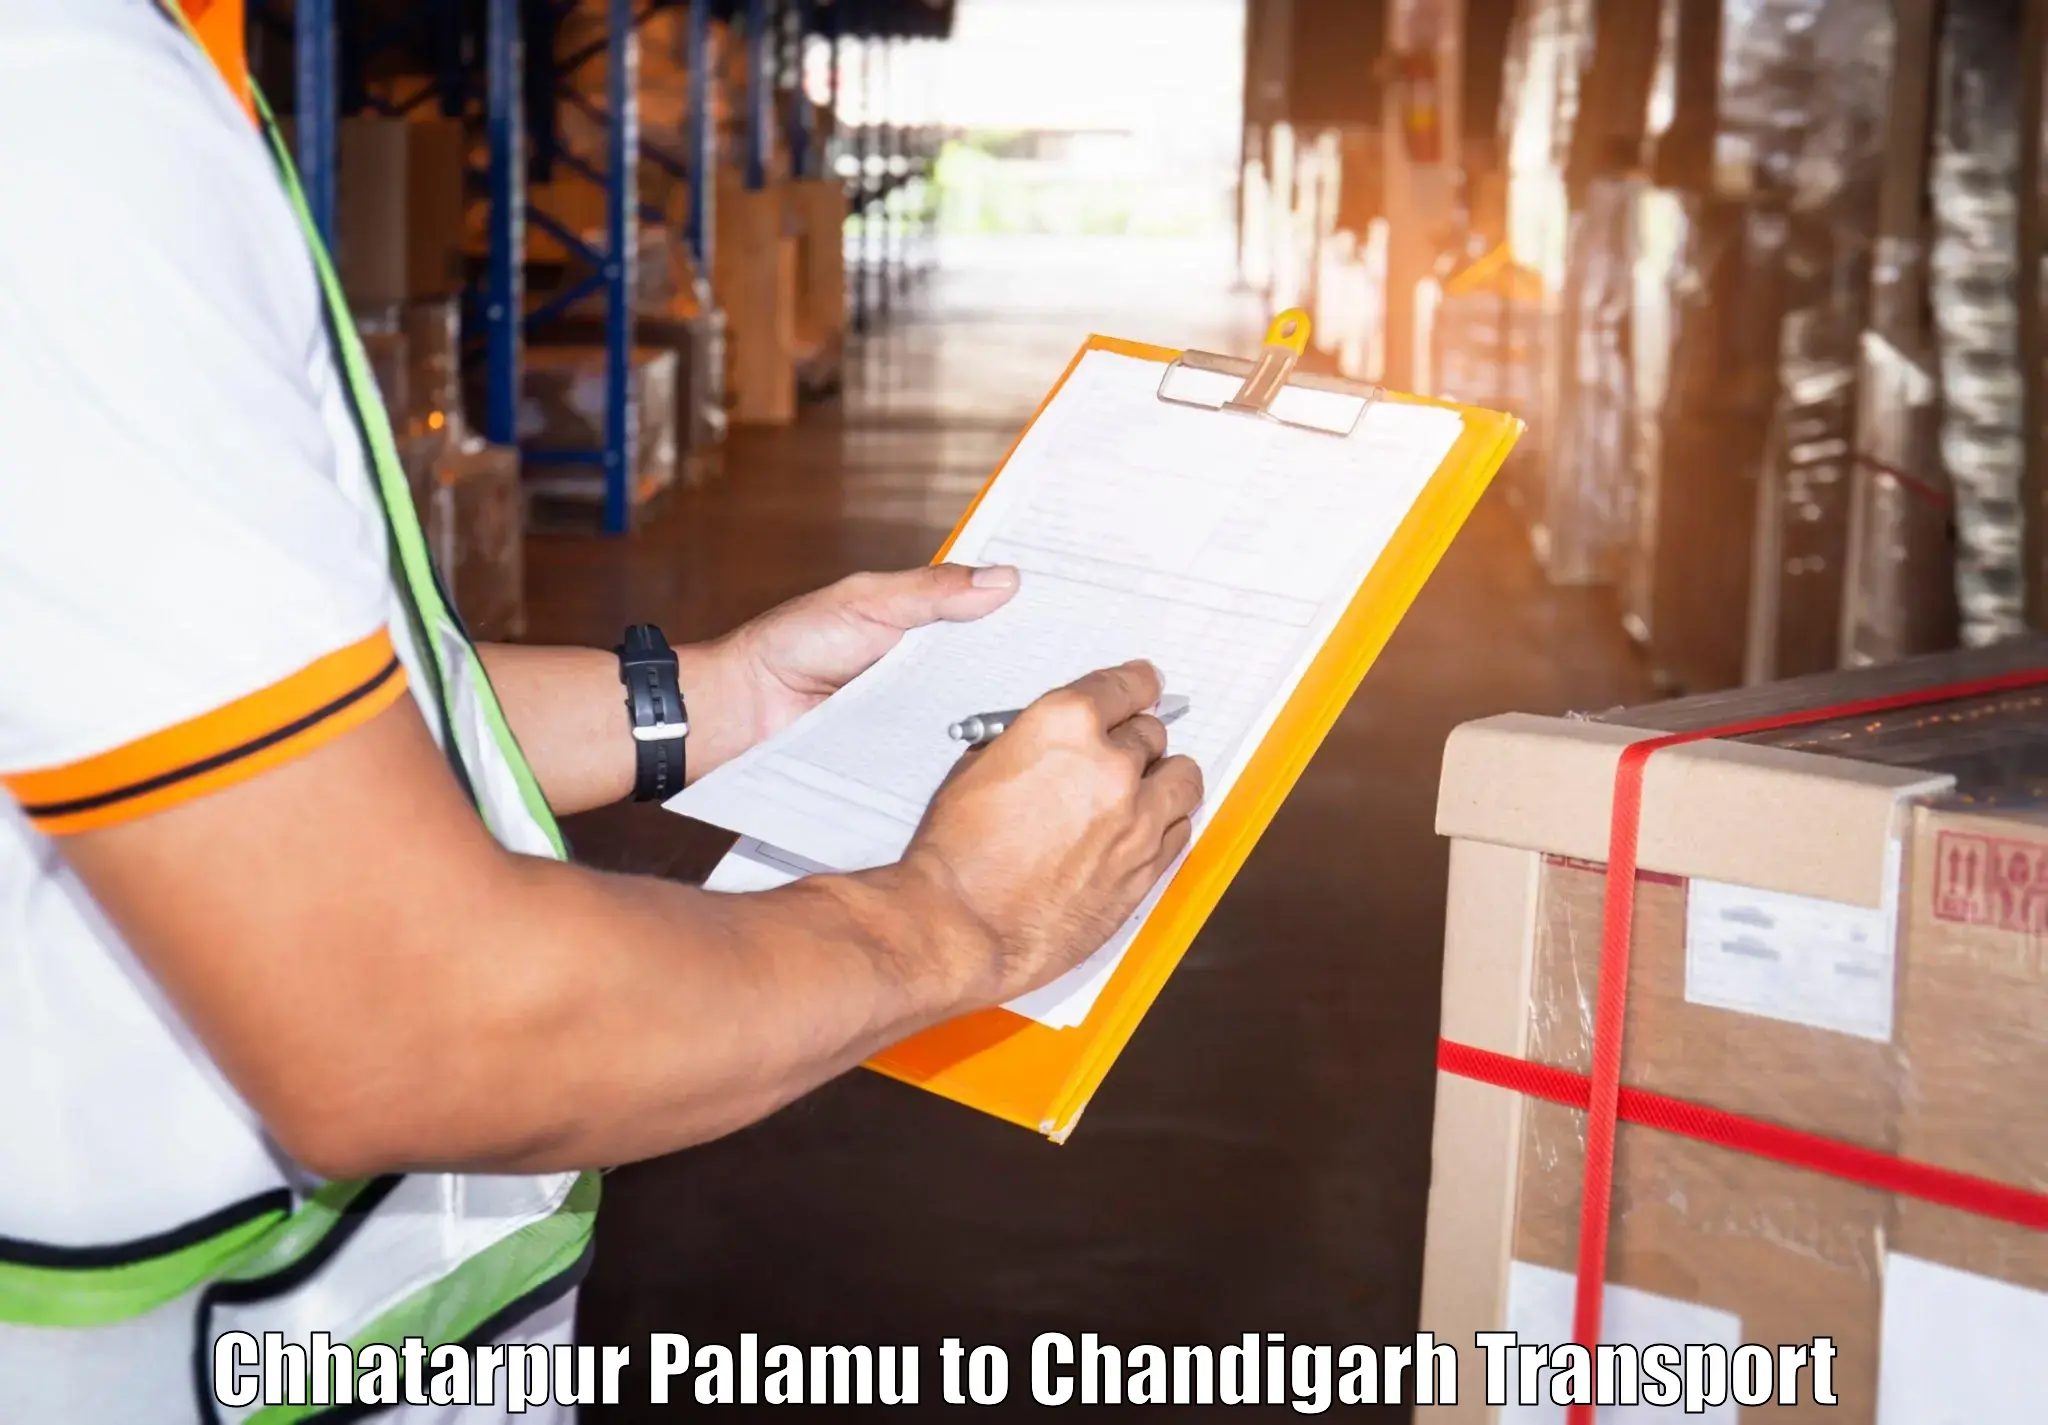 Container transport service Chhatarpur Palamu to Chandigarh